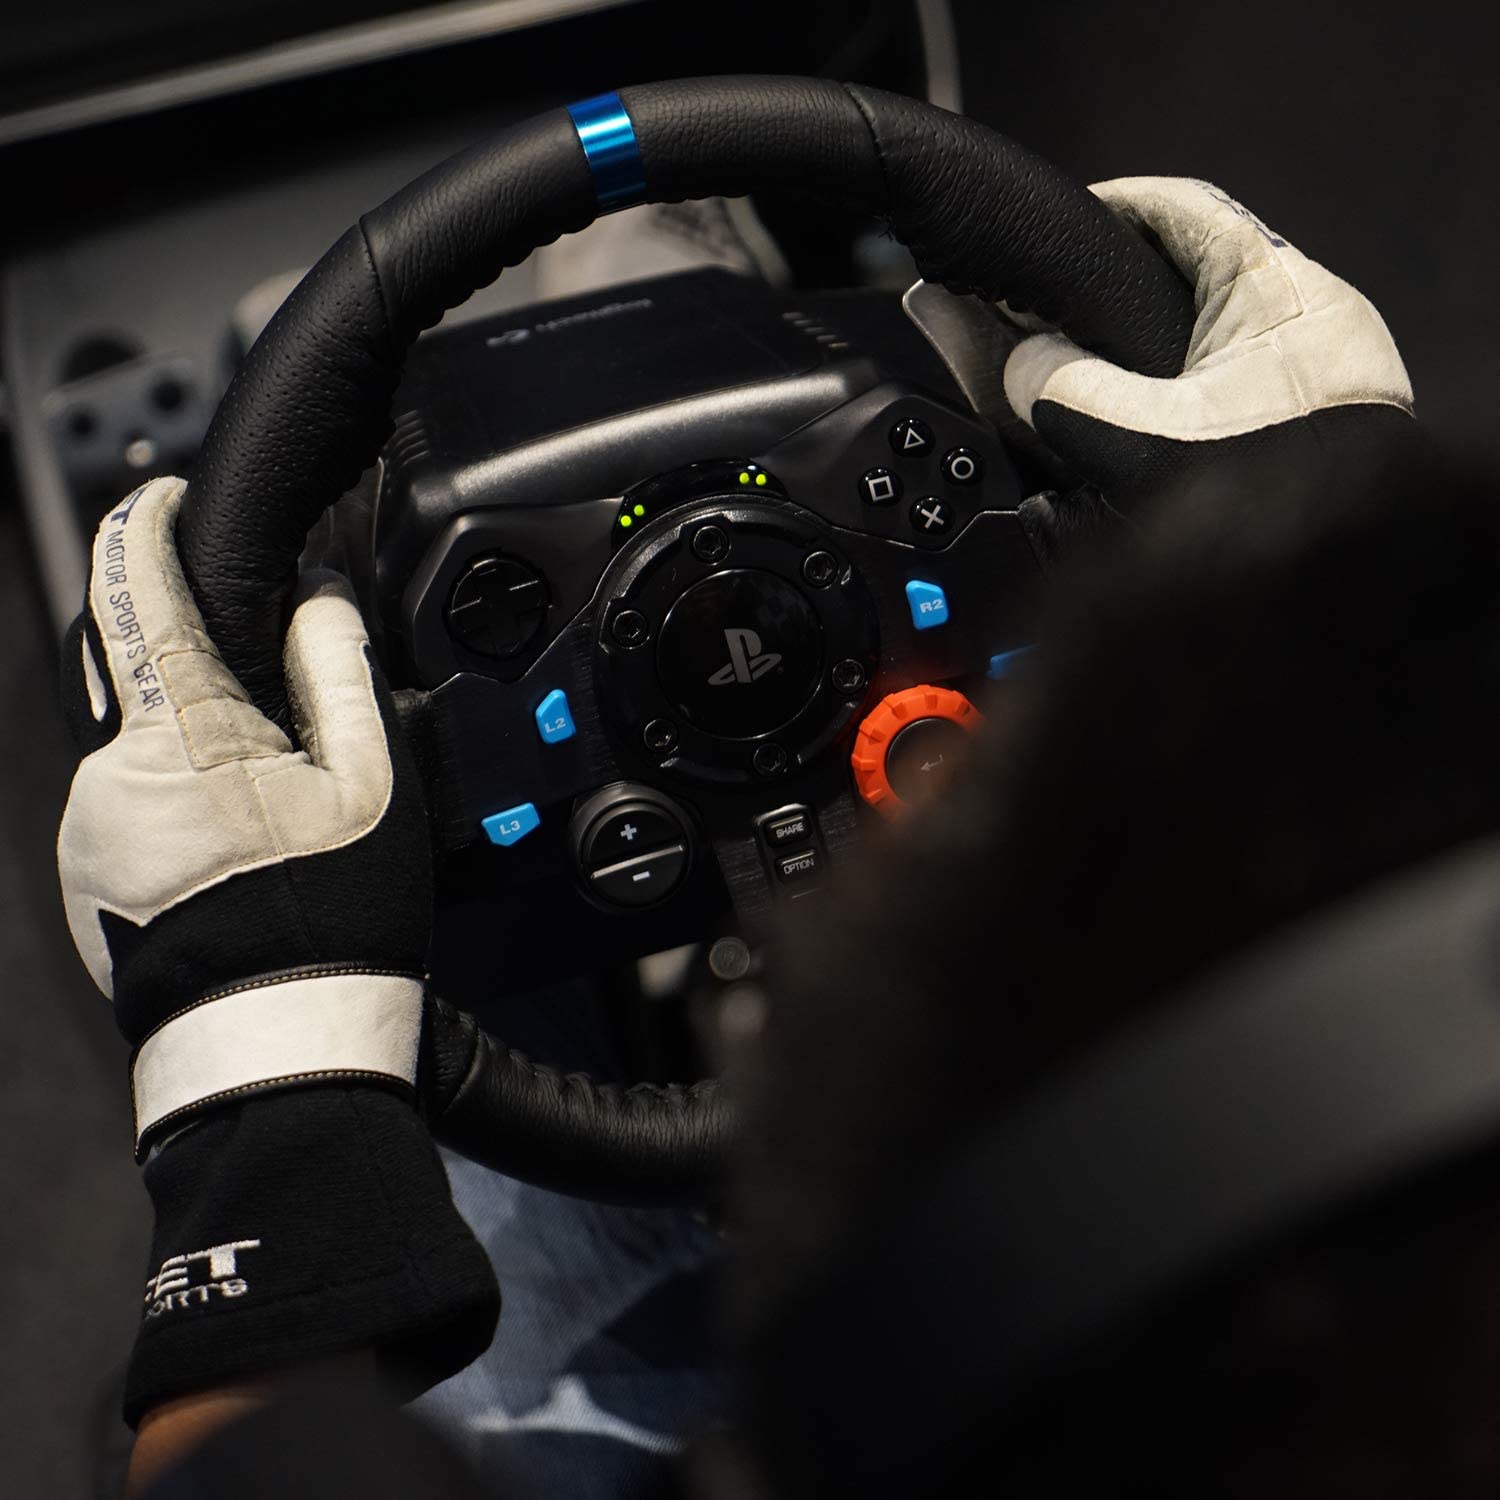 Logitech G29 Driving Force Volant de Course avec Levier de Vitesse Pédales,  Retour de Force Réaliste, Palettes en Acier Inoxydable, Rotation du Volant  à 900°, Prise EU, PS4/PS3/PC - Noir : 